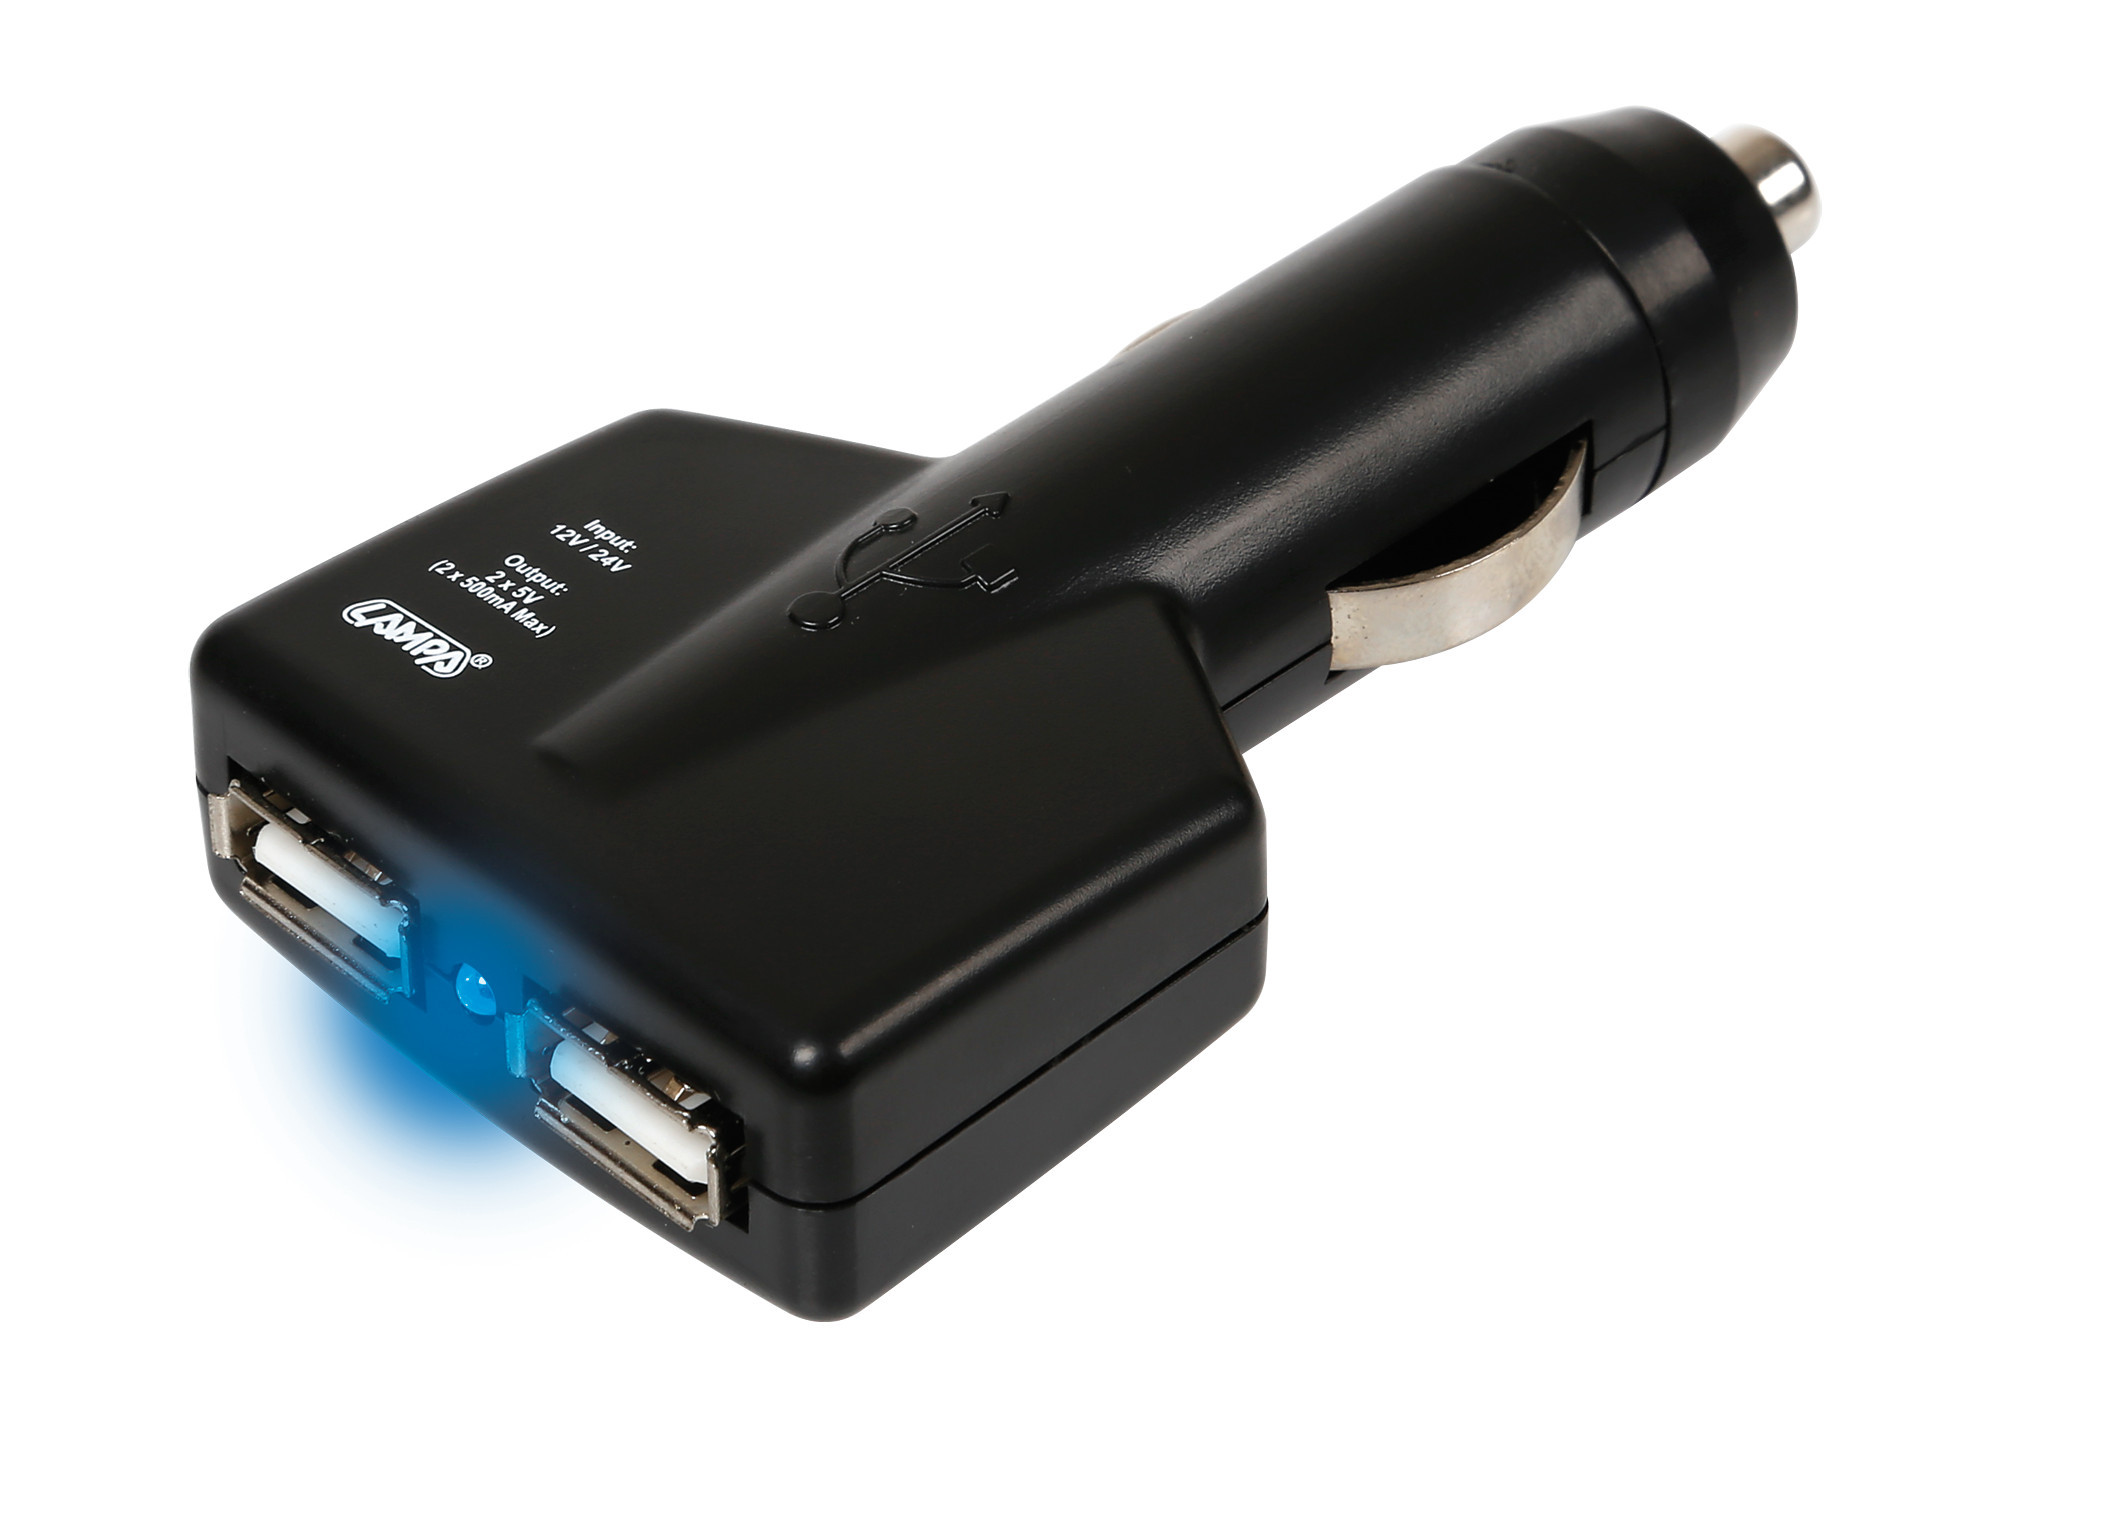 Elosztó 2 USB-vel szivargyújtóhoz 1000mA, 12/24V thumb